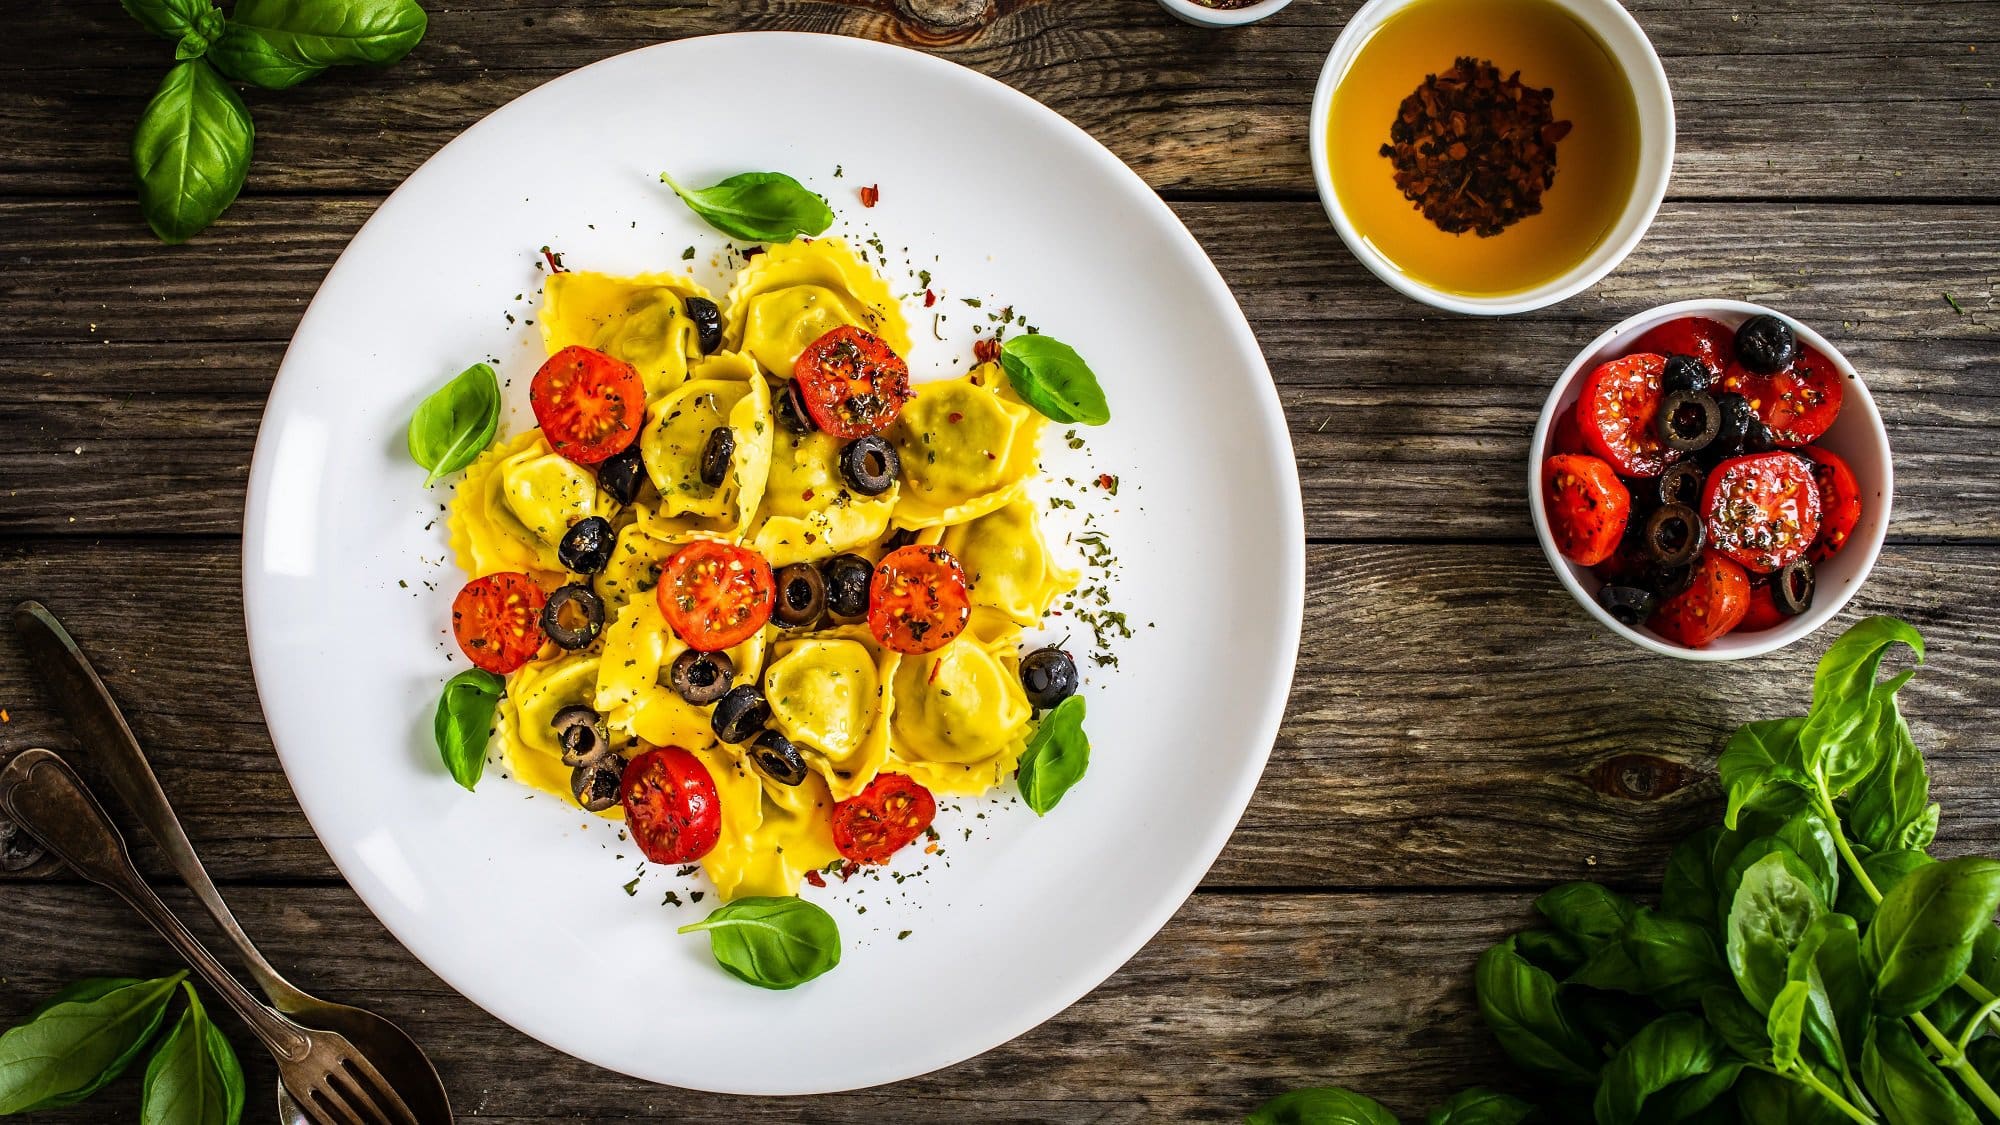 Draufsicht: Ein Teller Gefüllte Tortellini mit Oliven und Tomaten auf einem Holztisch. Daneben liegt frisches Basilikum, sowie zwei Schälchen mit Gewürzölen.